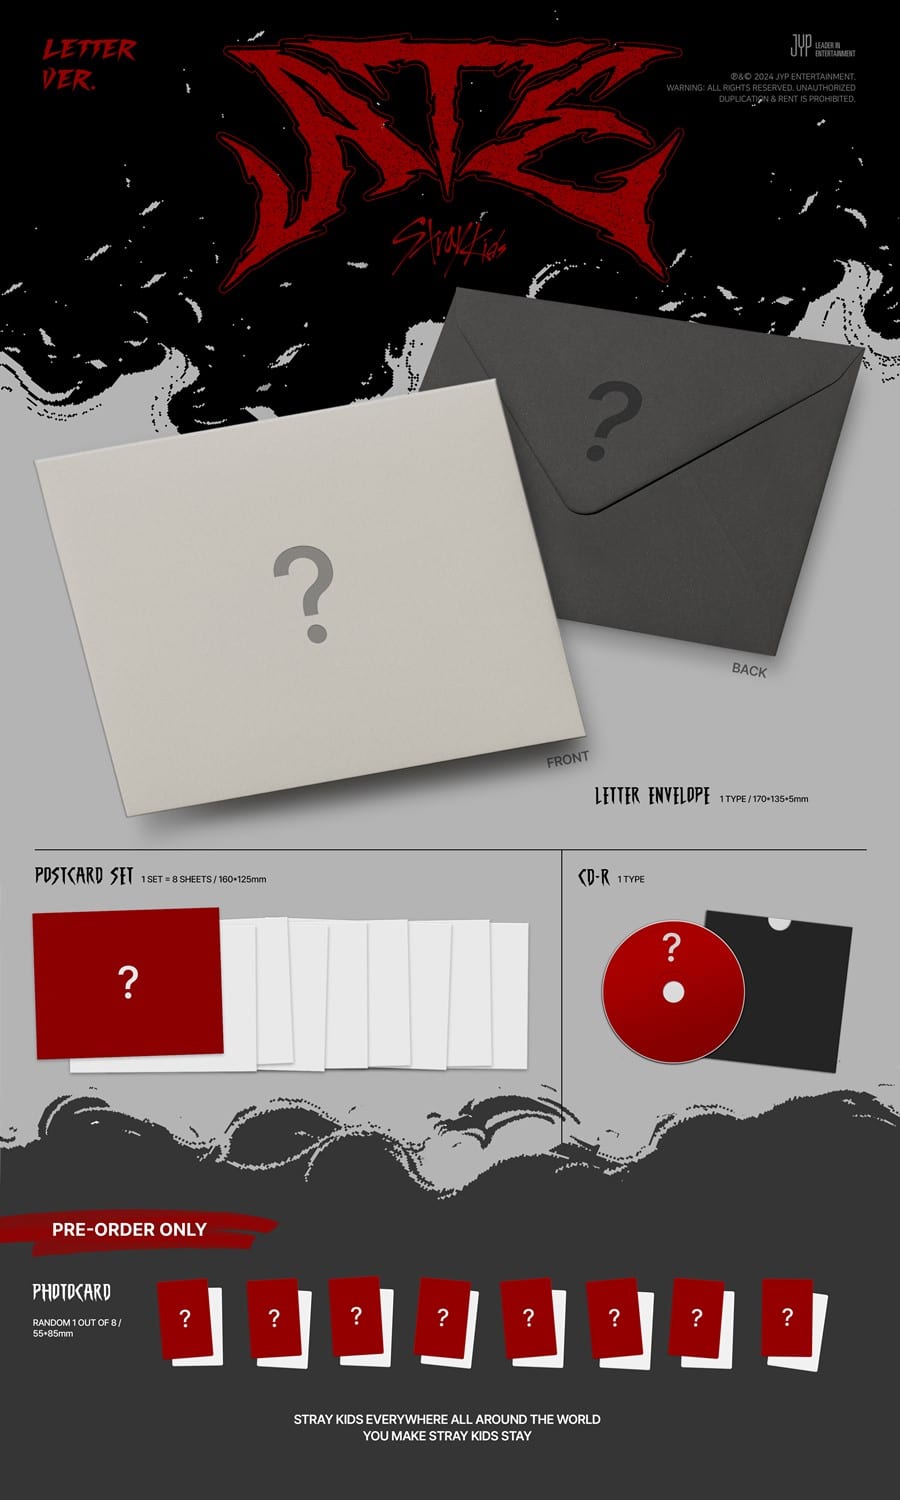 [SOUNDWAVE POB] STRAY KIDS – Mini Album [ATE] (Letter Ver.)